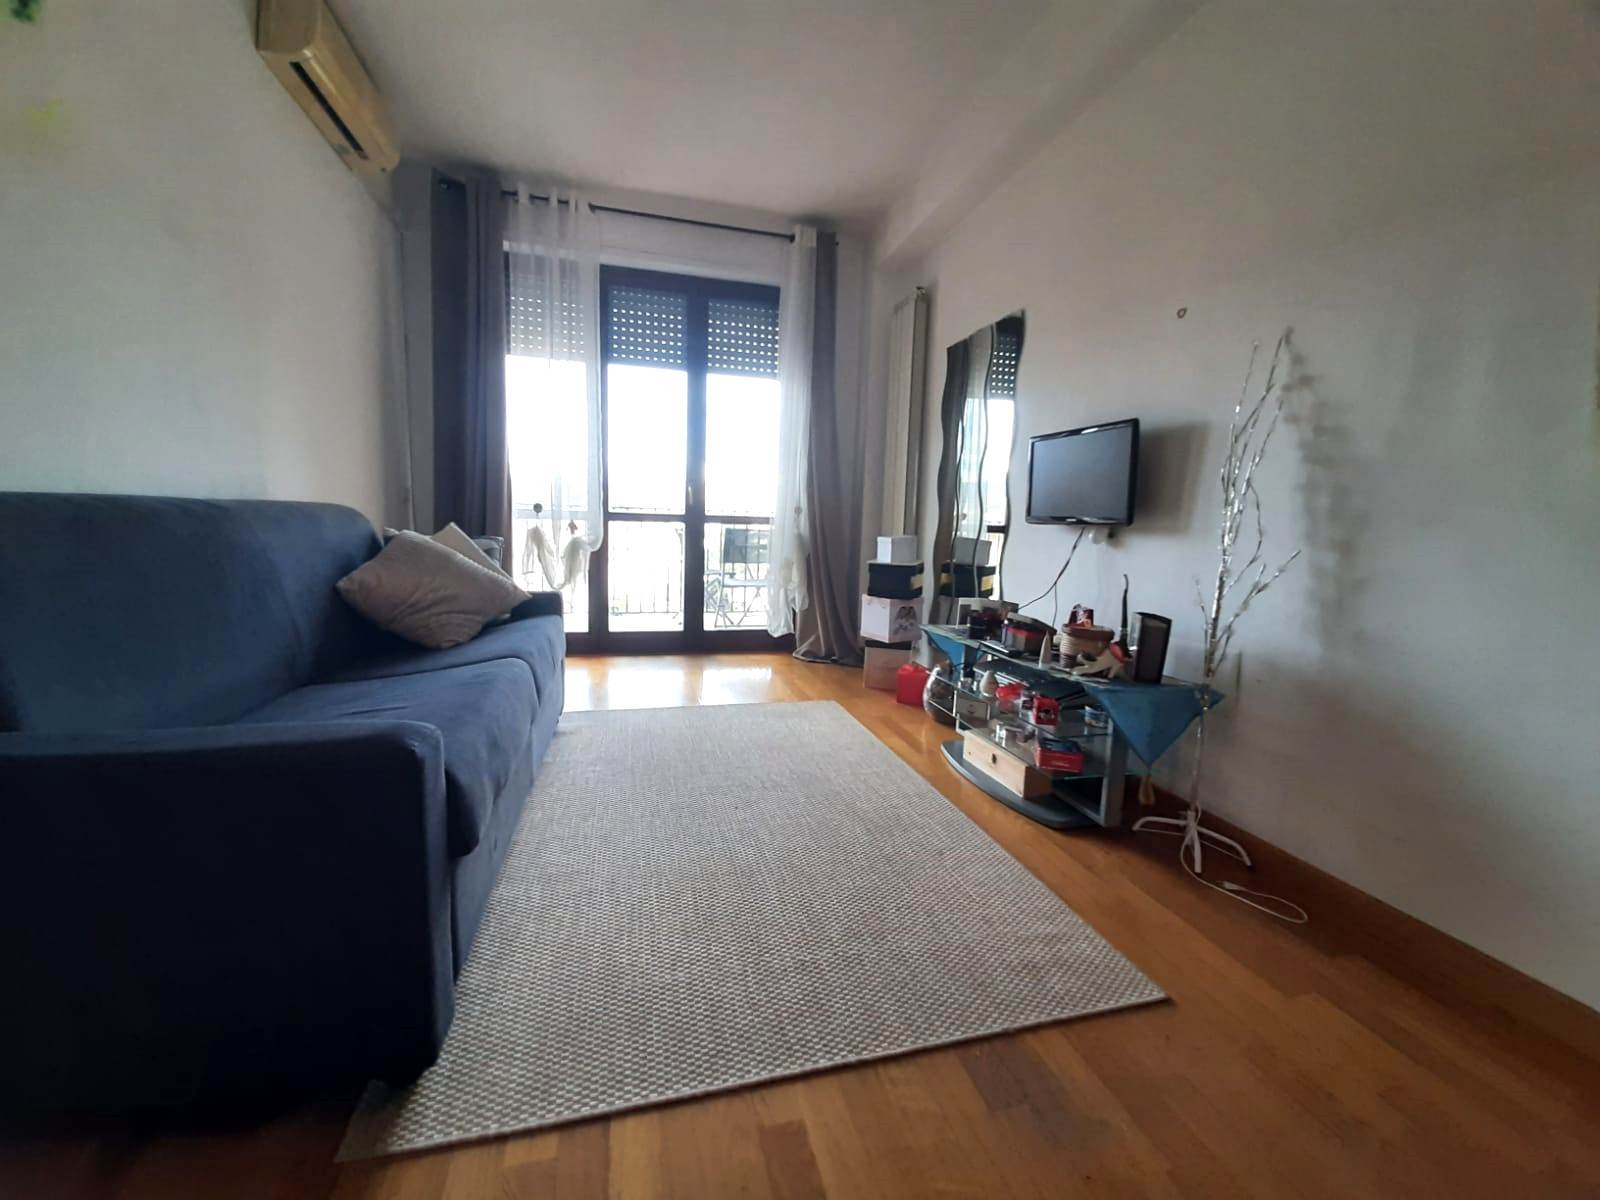 Appartamento in vendita a Terni, 1 locali, zona Località: BORGO RIVO, prezzo € 38.000 | PortaleAgenzieImmobiliari.it